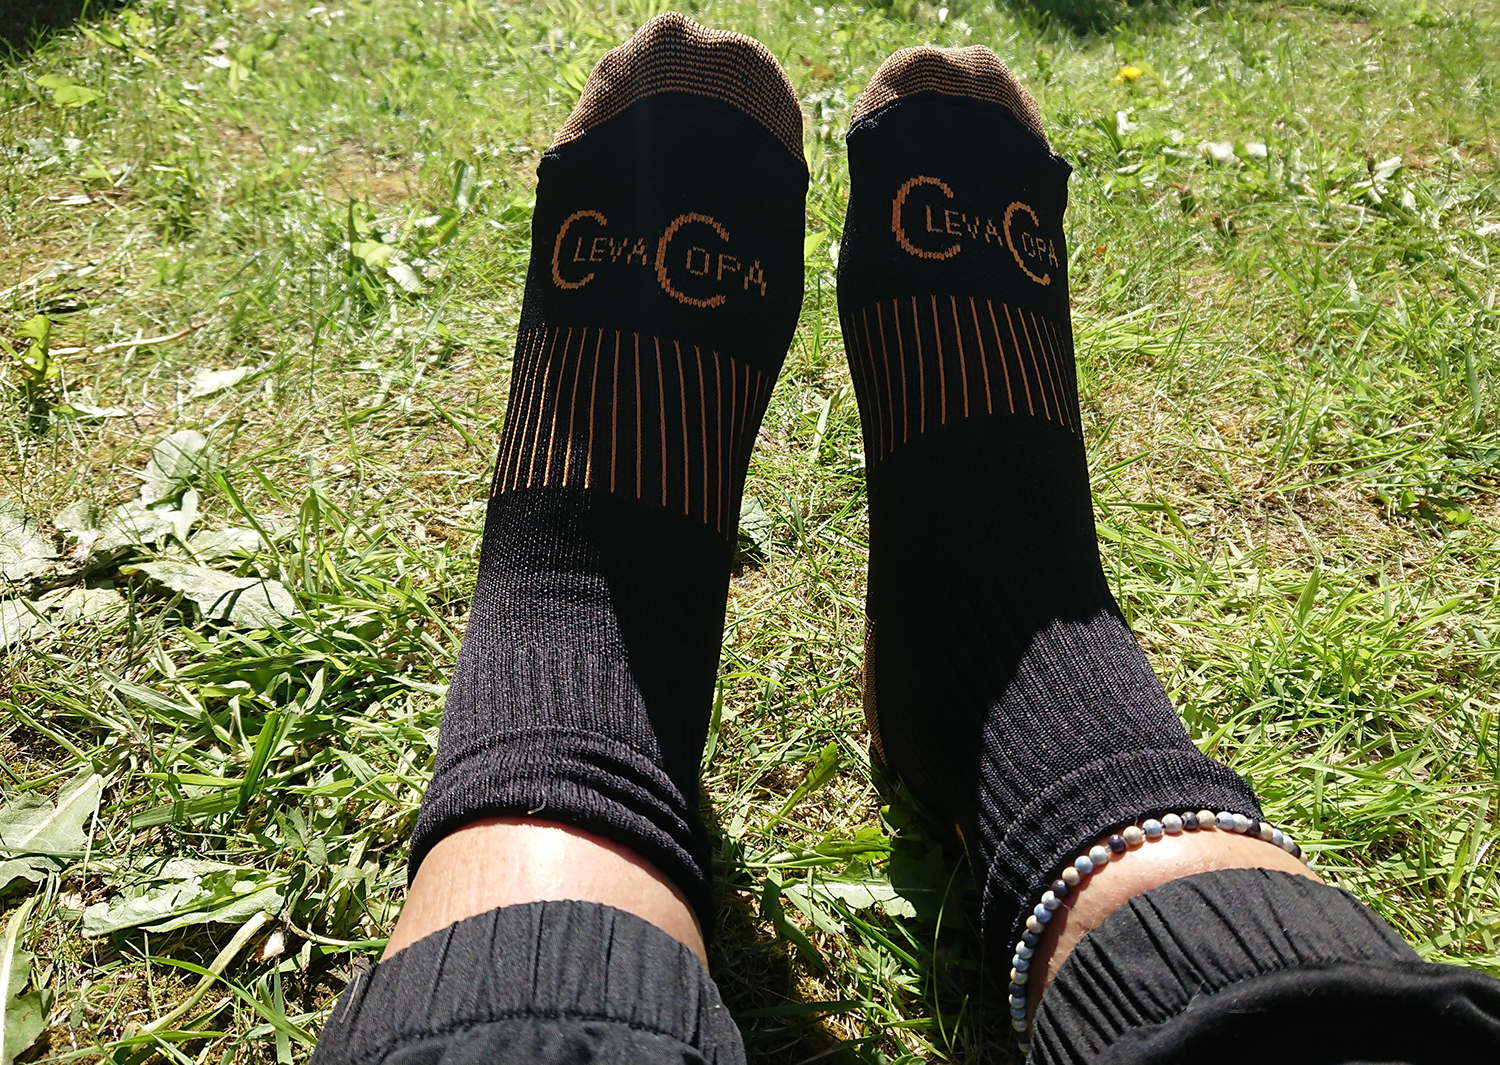 Copper compression socks